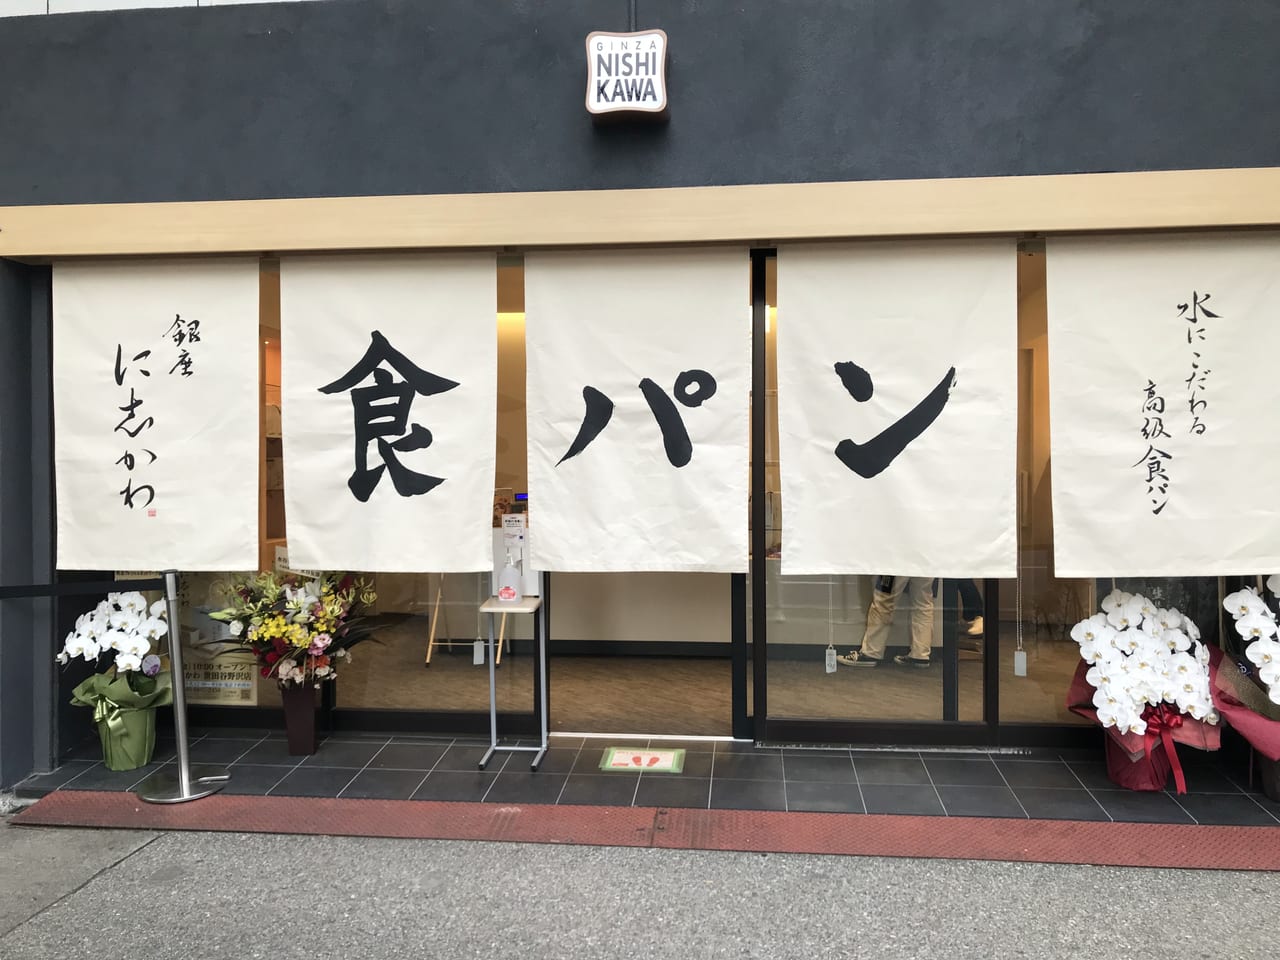 環七通り沿い、龍雲寺交差点近くに銀座に志かわ世田谷野沢店が2021年10月15日にオープンしました。